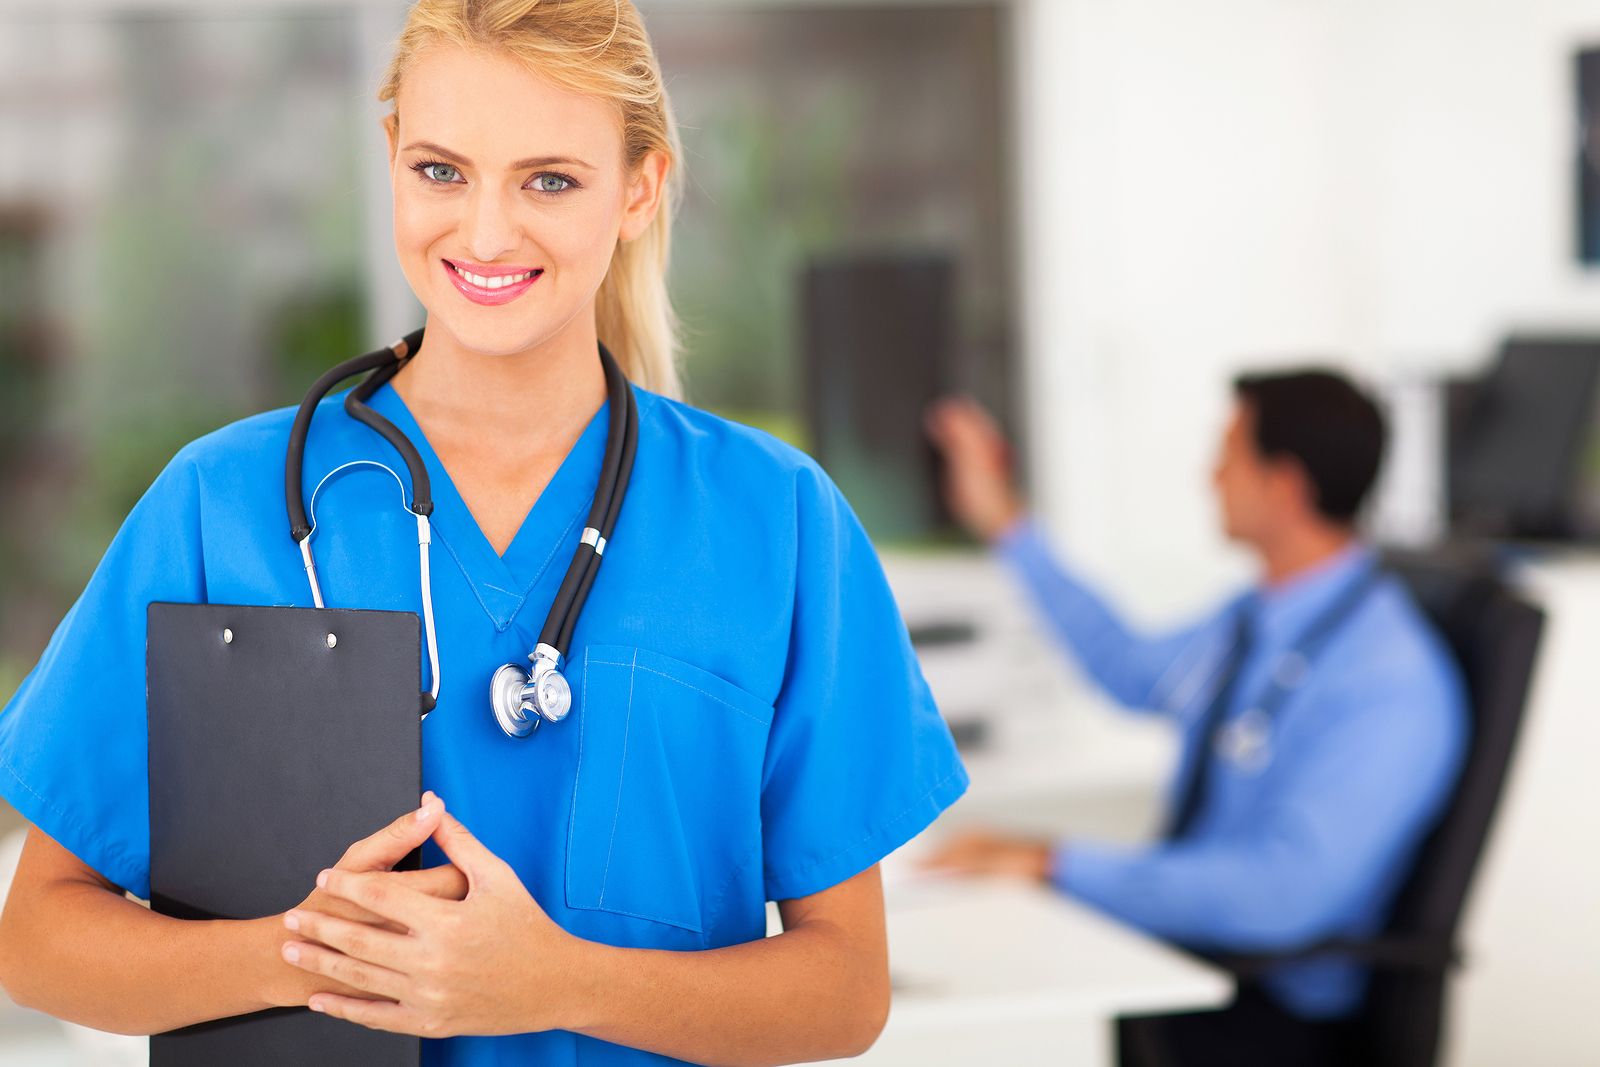 Necesar de cariera: Vrei sa fii asistent medical, dar stii de ce?